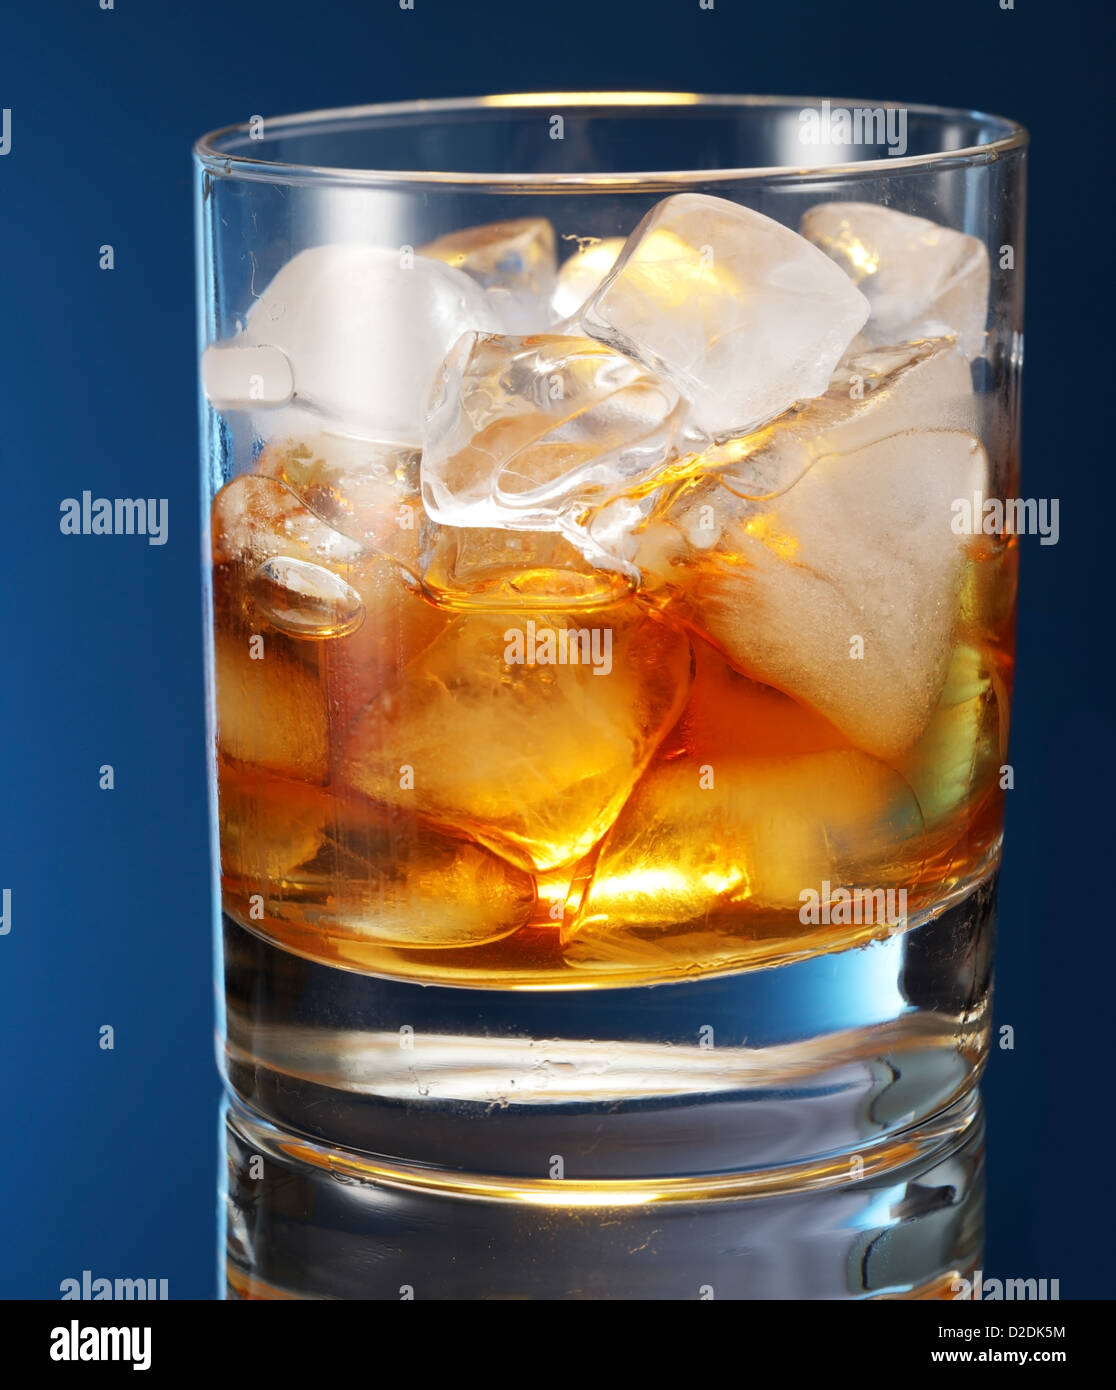 Vaso de whisky sobre un fondo azul. Foto de stock